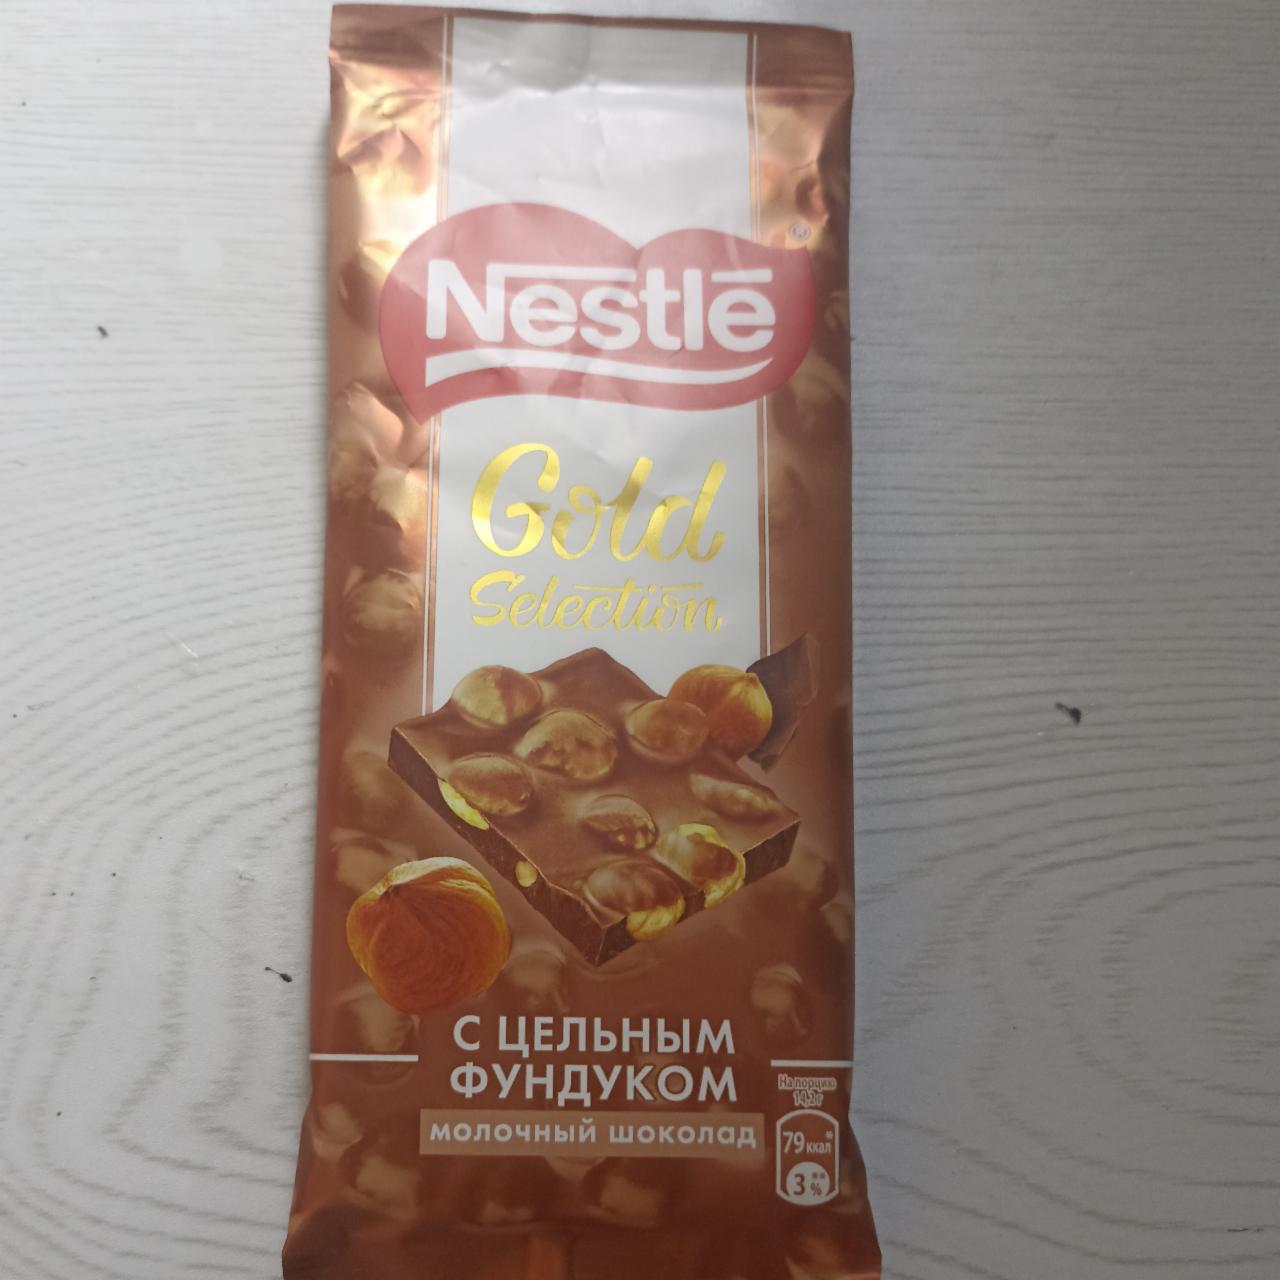 Фото - Шоколад Gold Selection молочный шоколад с цельным фундуком Nestle